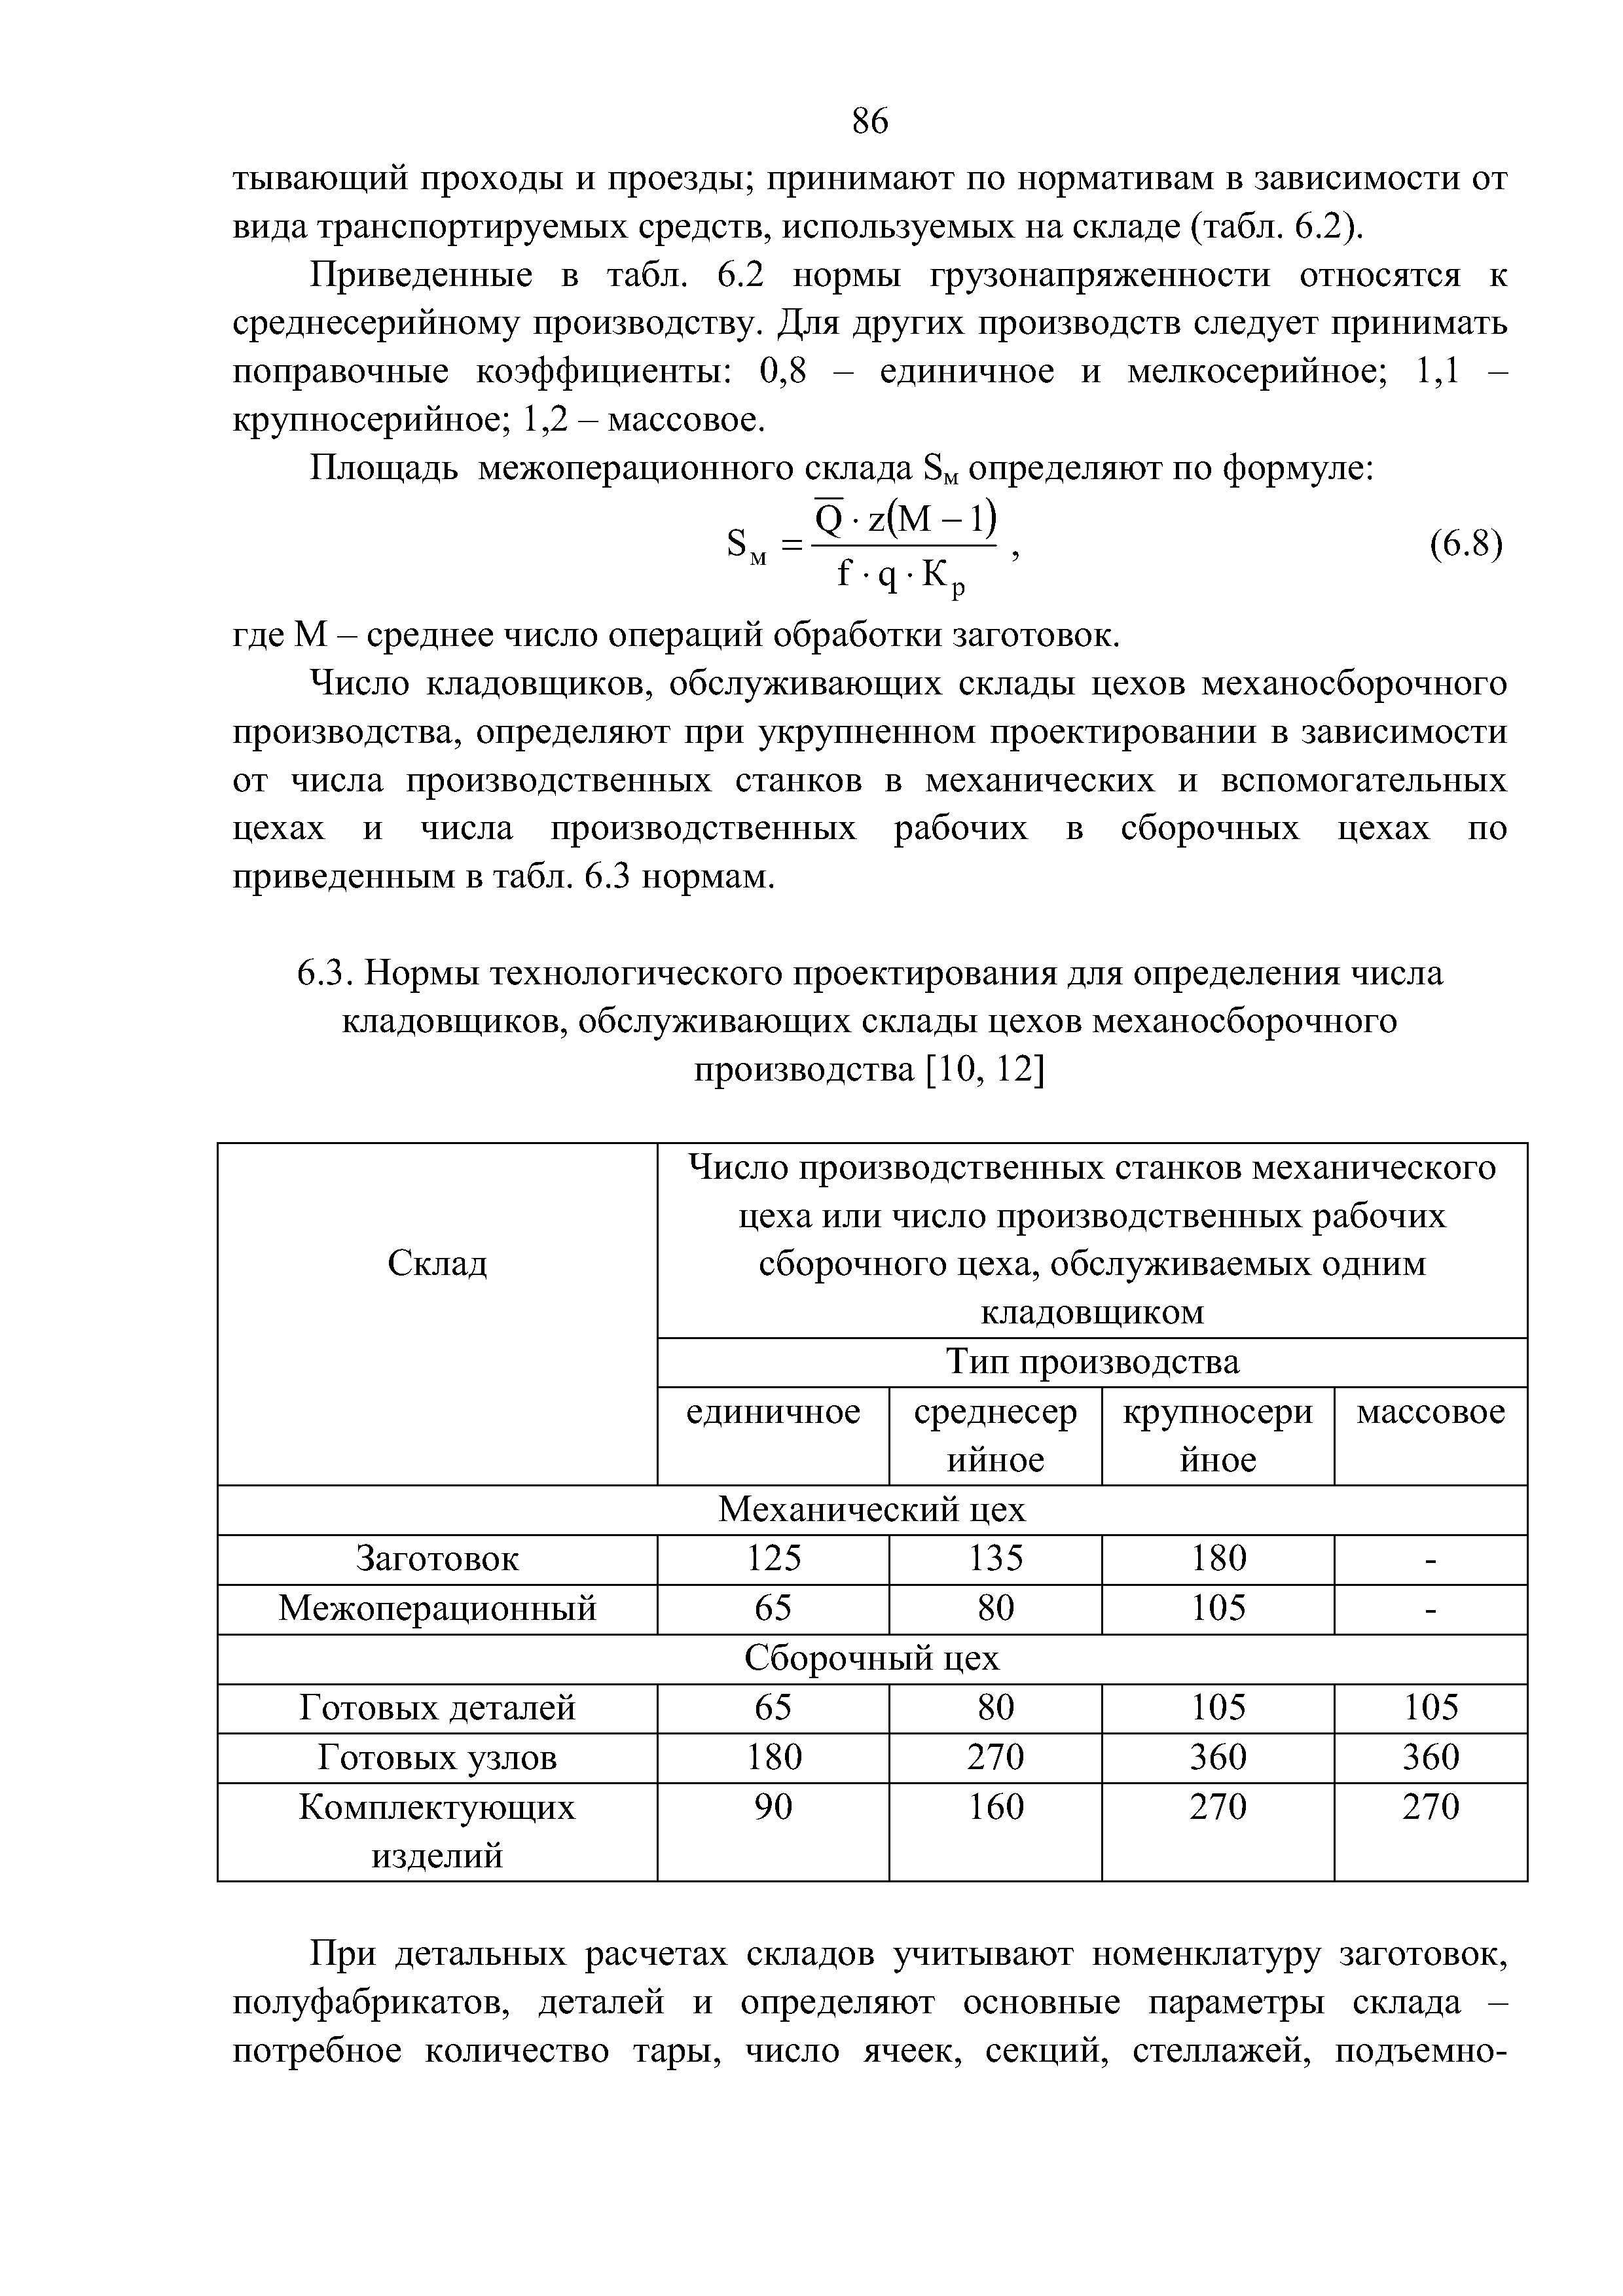 Приведенные в табл. 6.2 нормы грузонапряженности относятся к среднесерийному производству. Для других производств следует принимать поправочные коэффициенты 0,8 - единичное и мелкосерийное 1,1 -крупносерийное 1,2 - массовое.
